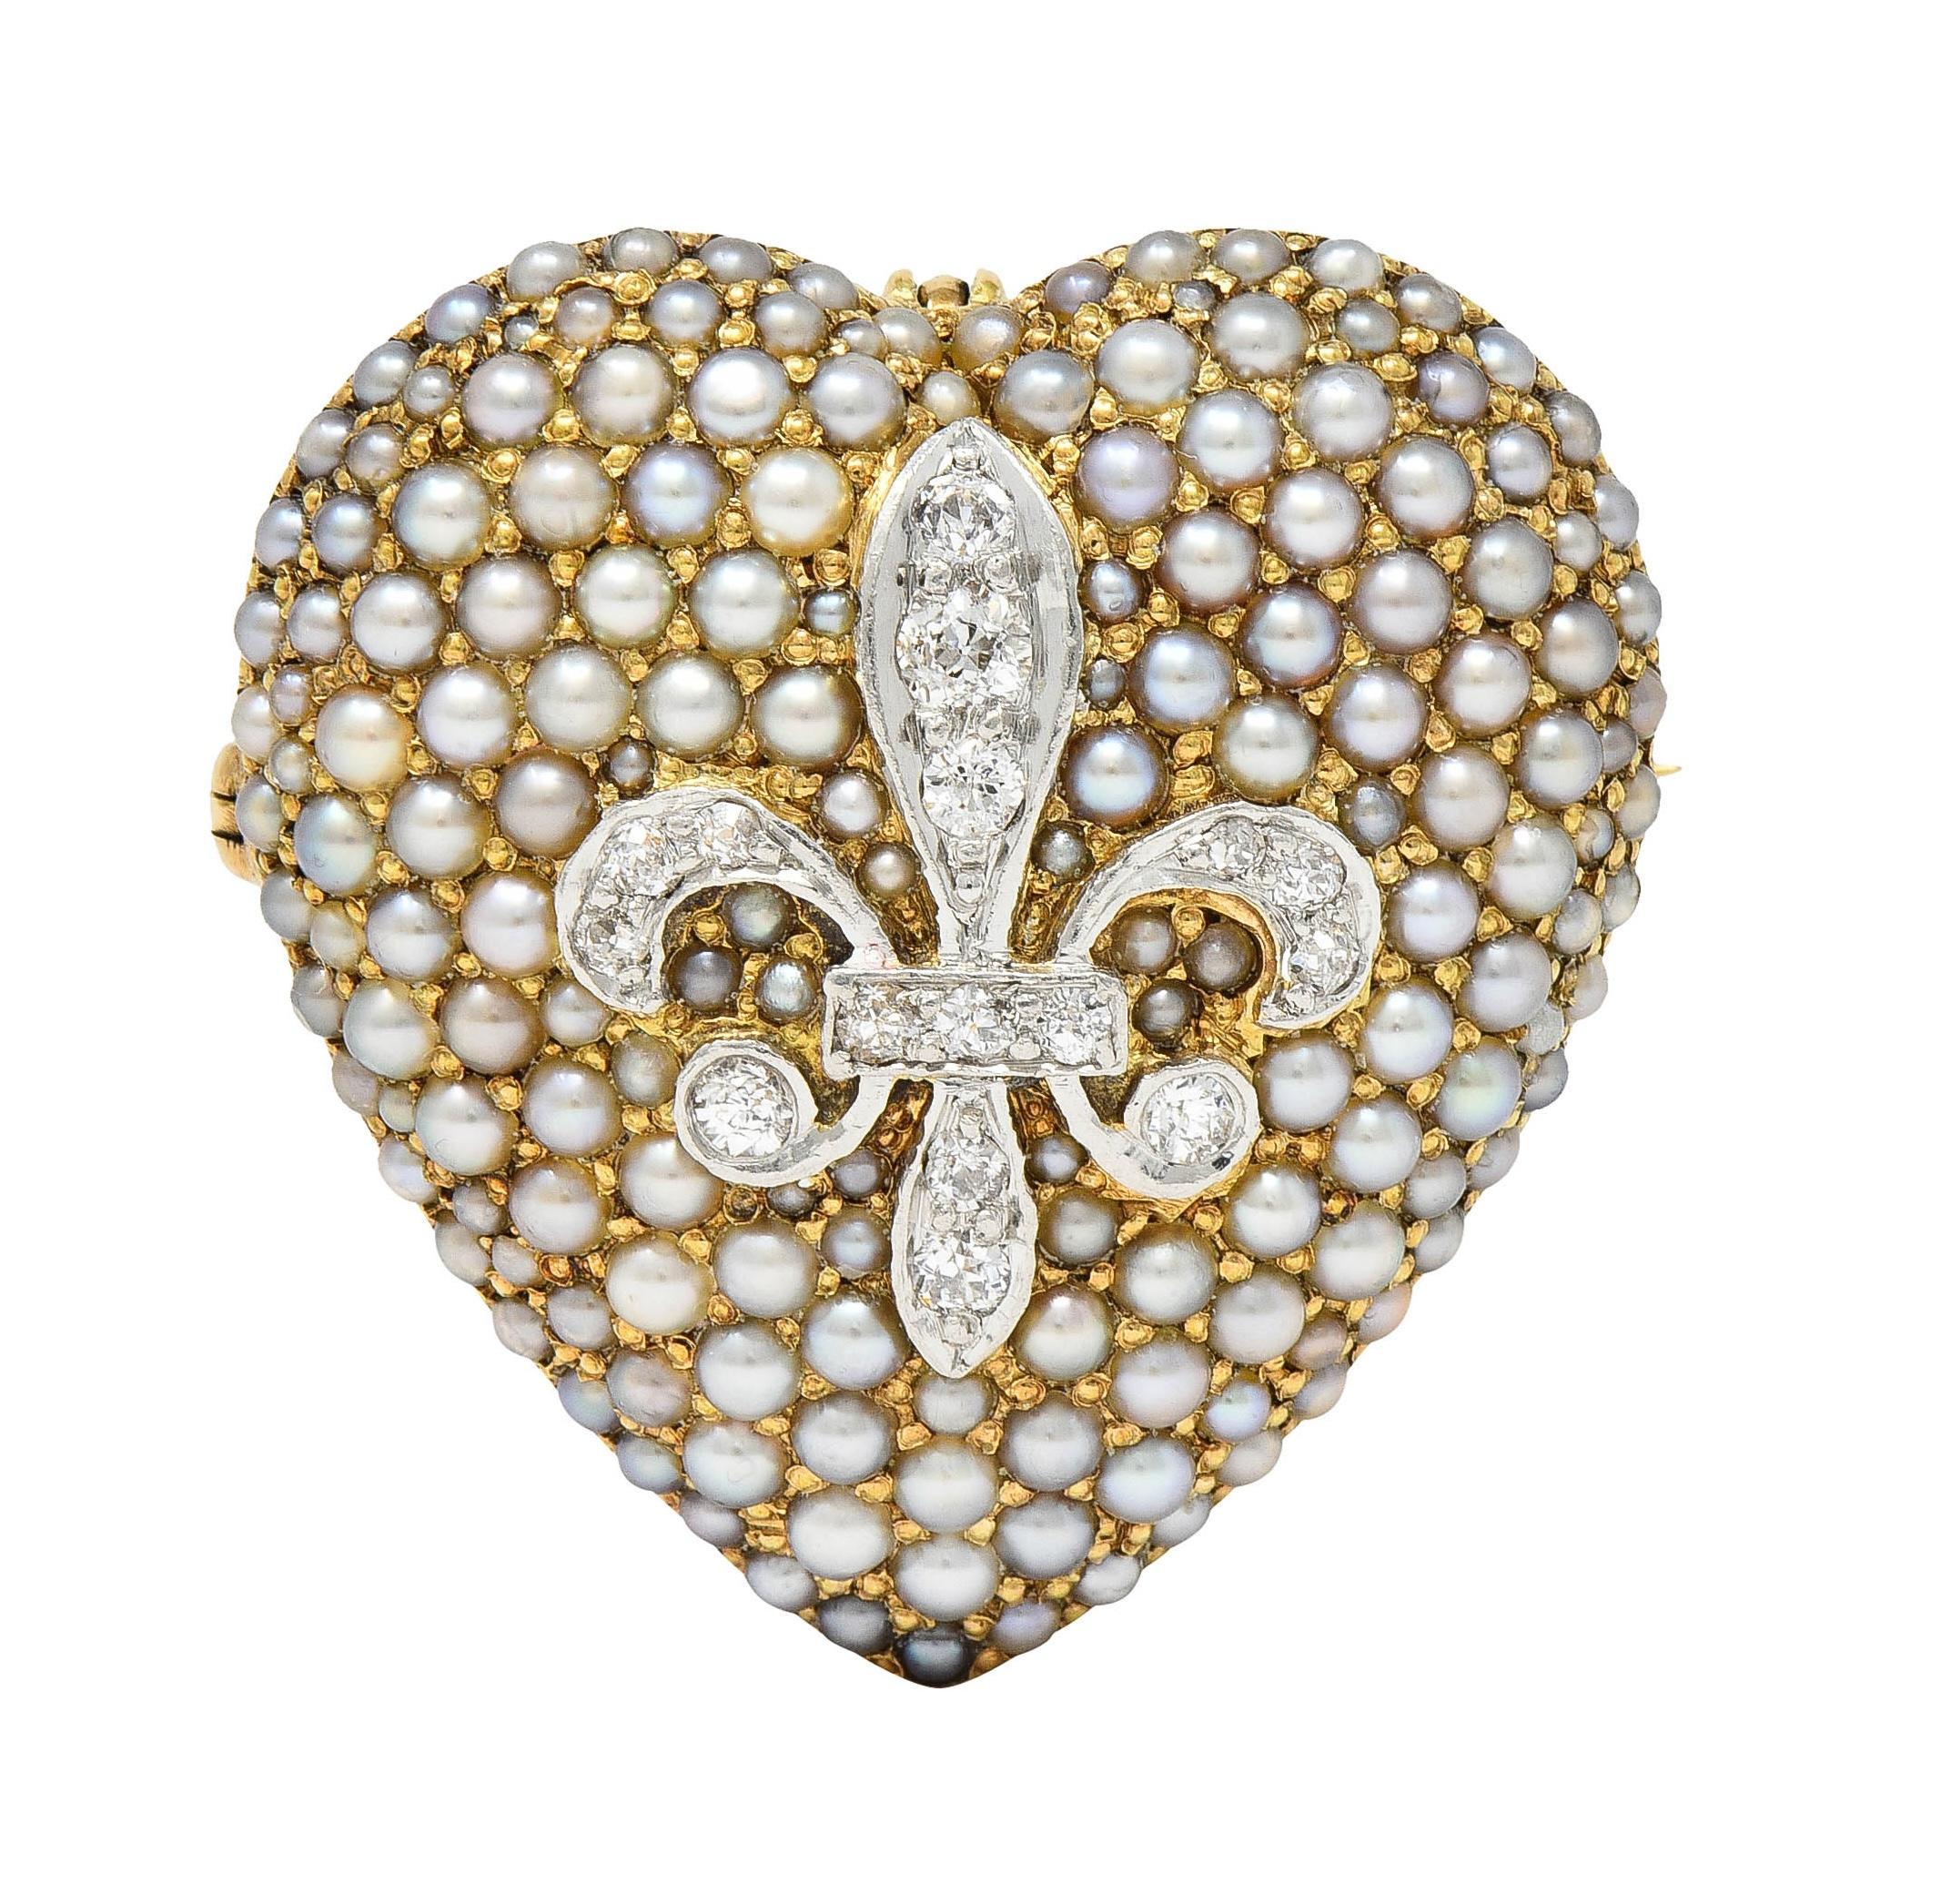 Gewölbte, herzförmige Form A, in deren Zentrum ein platinfarbenes Fleur-de-Lis-Motiv steht
Perlenbesatz mit Diamanten im alten europäischen Schliff mit einem Gesamtgewicht von etwa 0,72 Karat
H bis J Farbe mit VS2 Klarheit - Herz umgeben ist Pavé